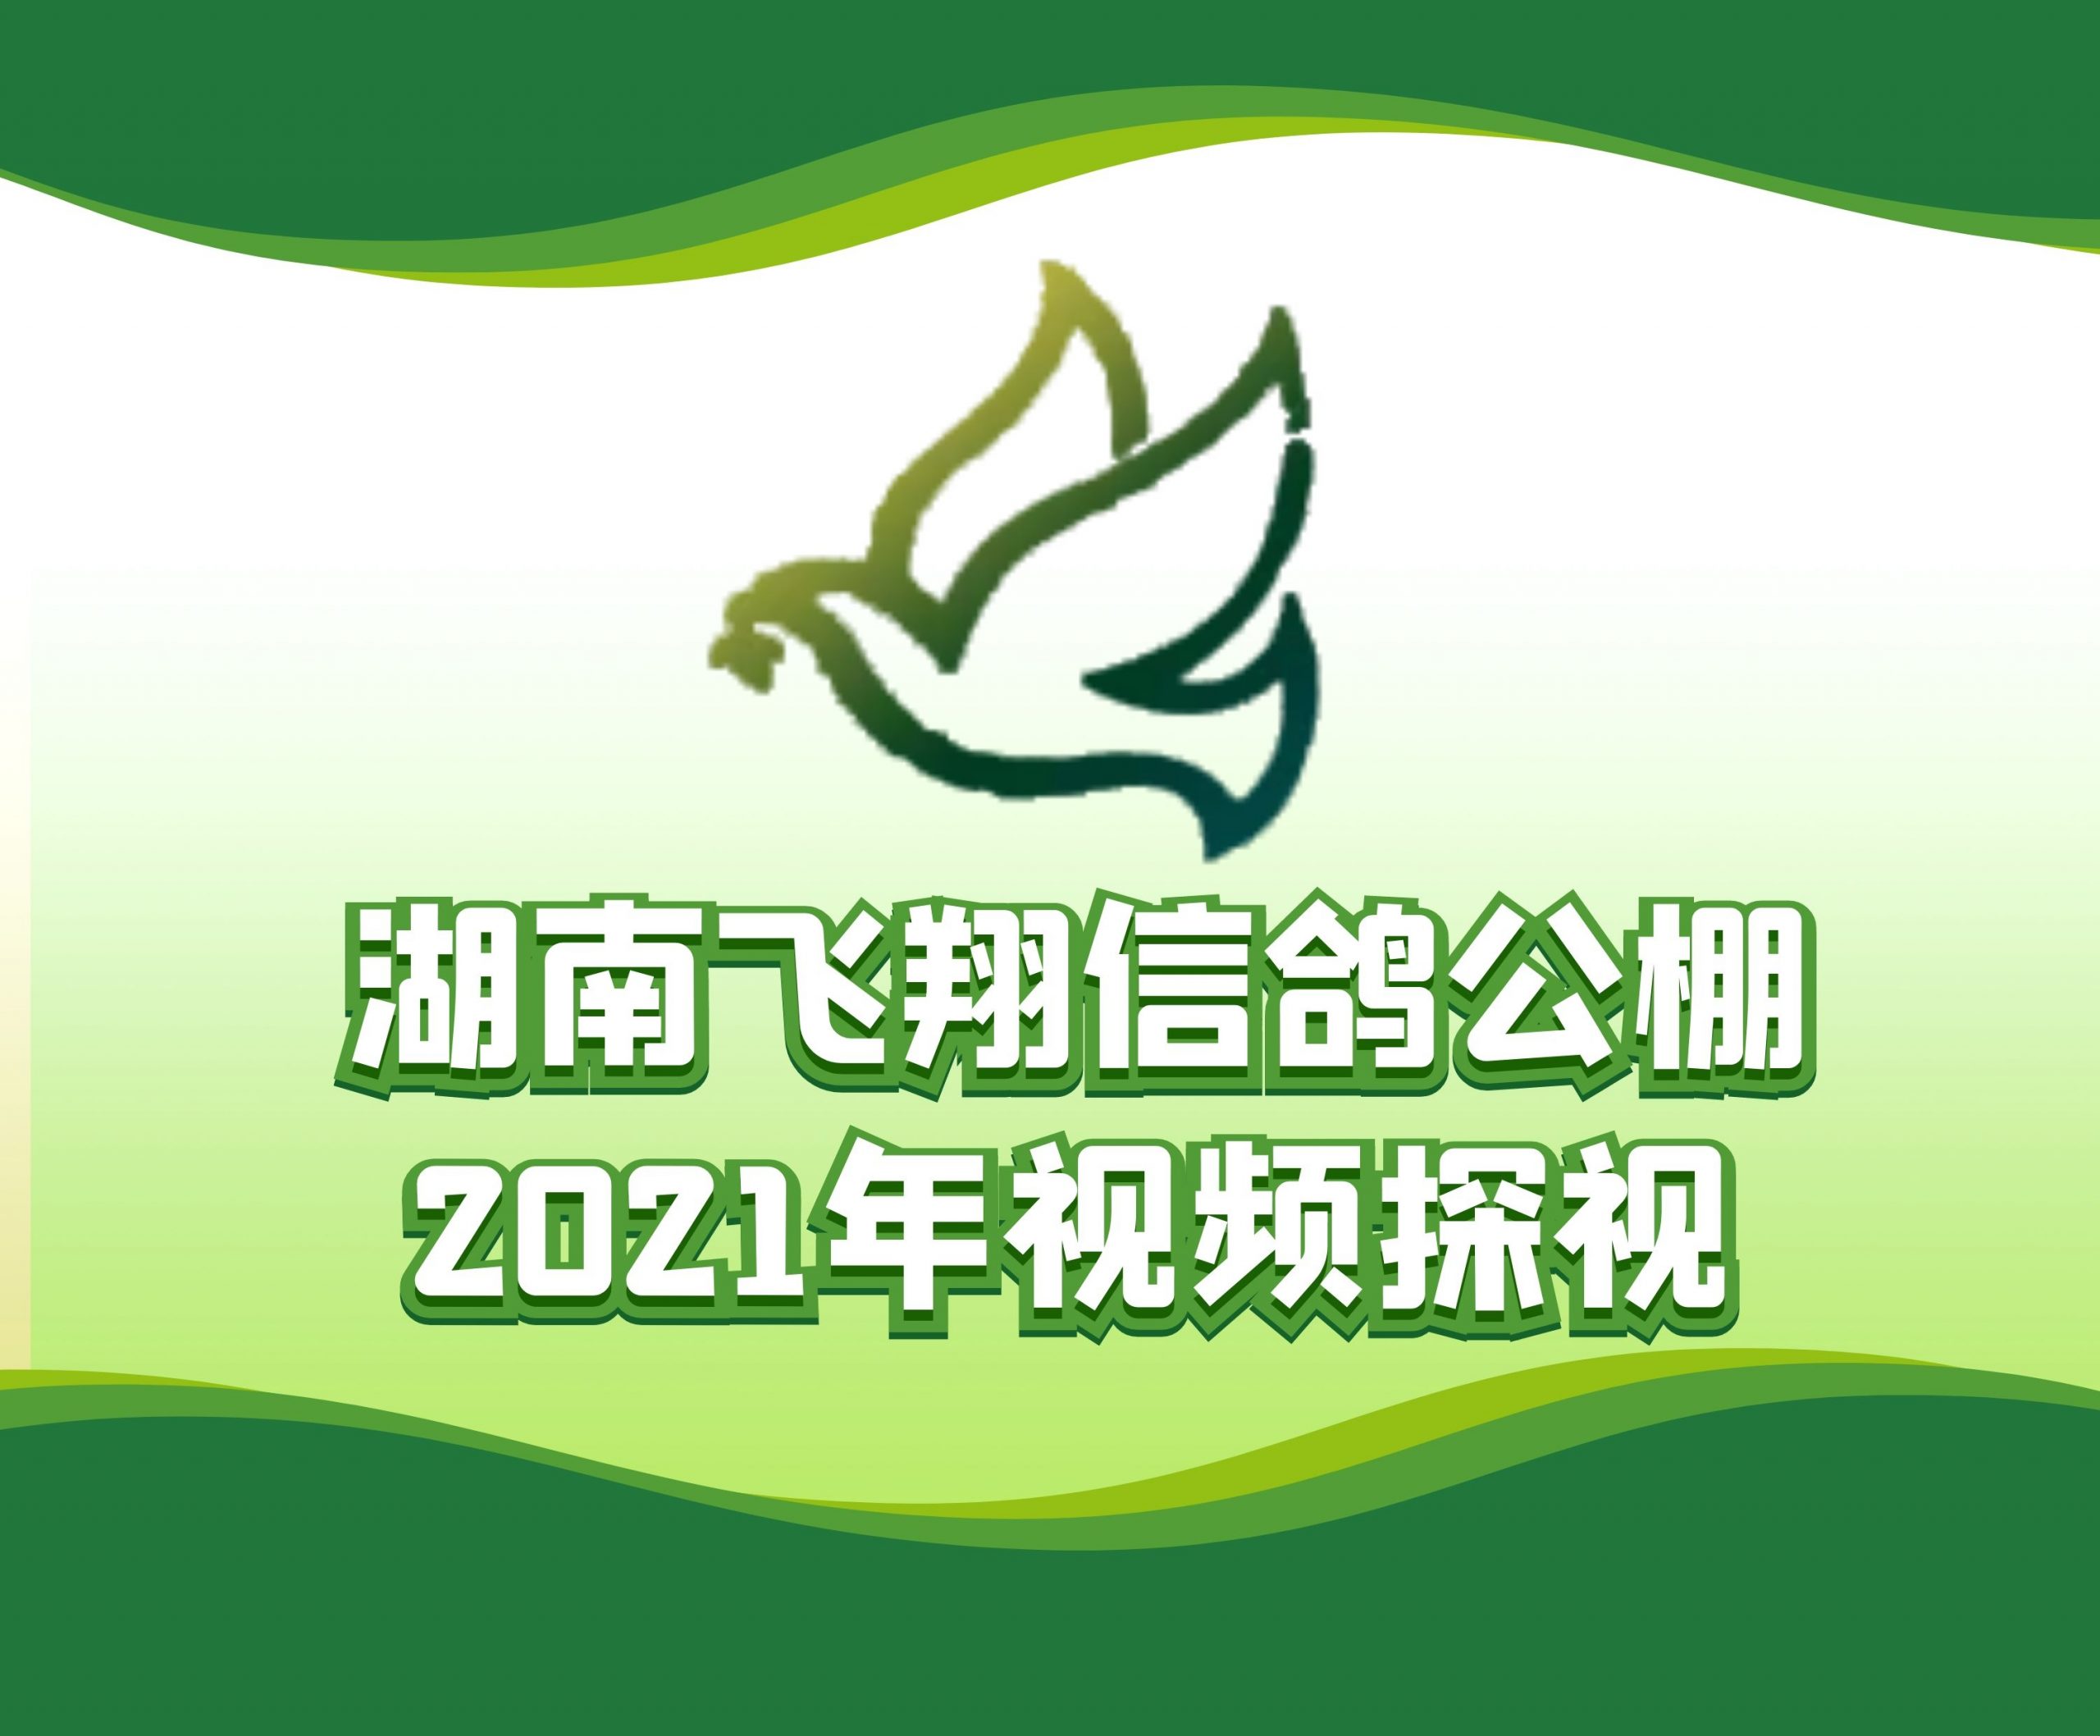 盛辉特-吴石鸽-2021-14-0126147